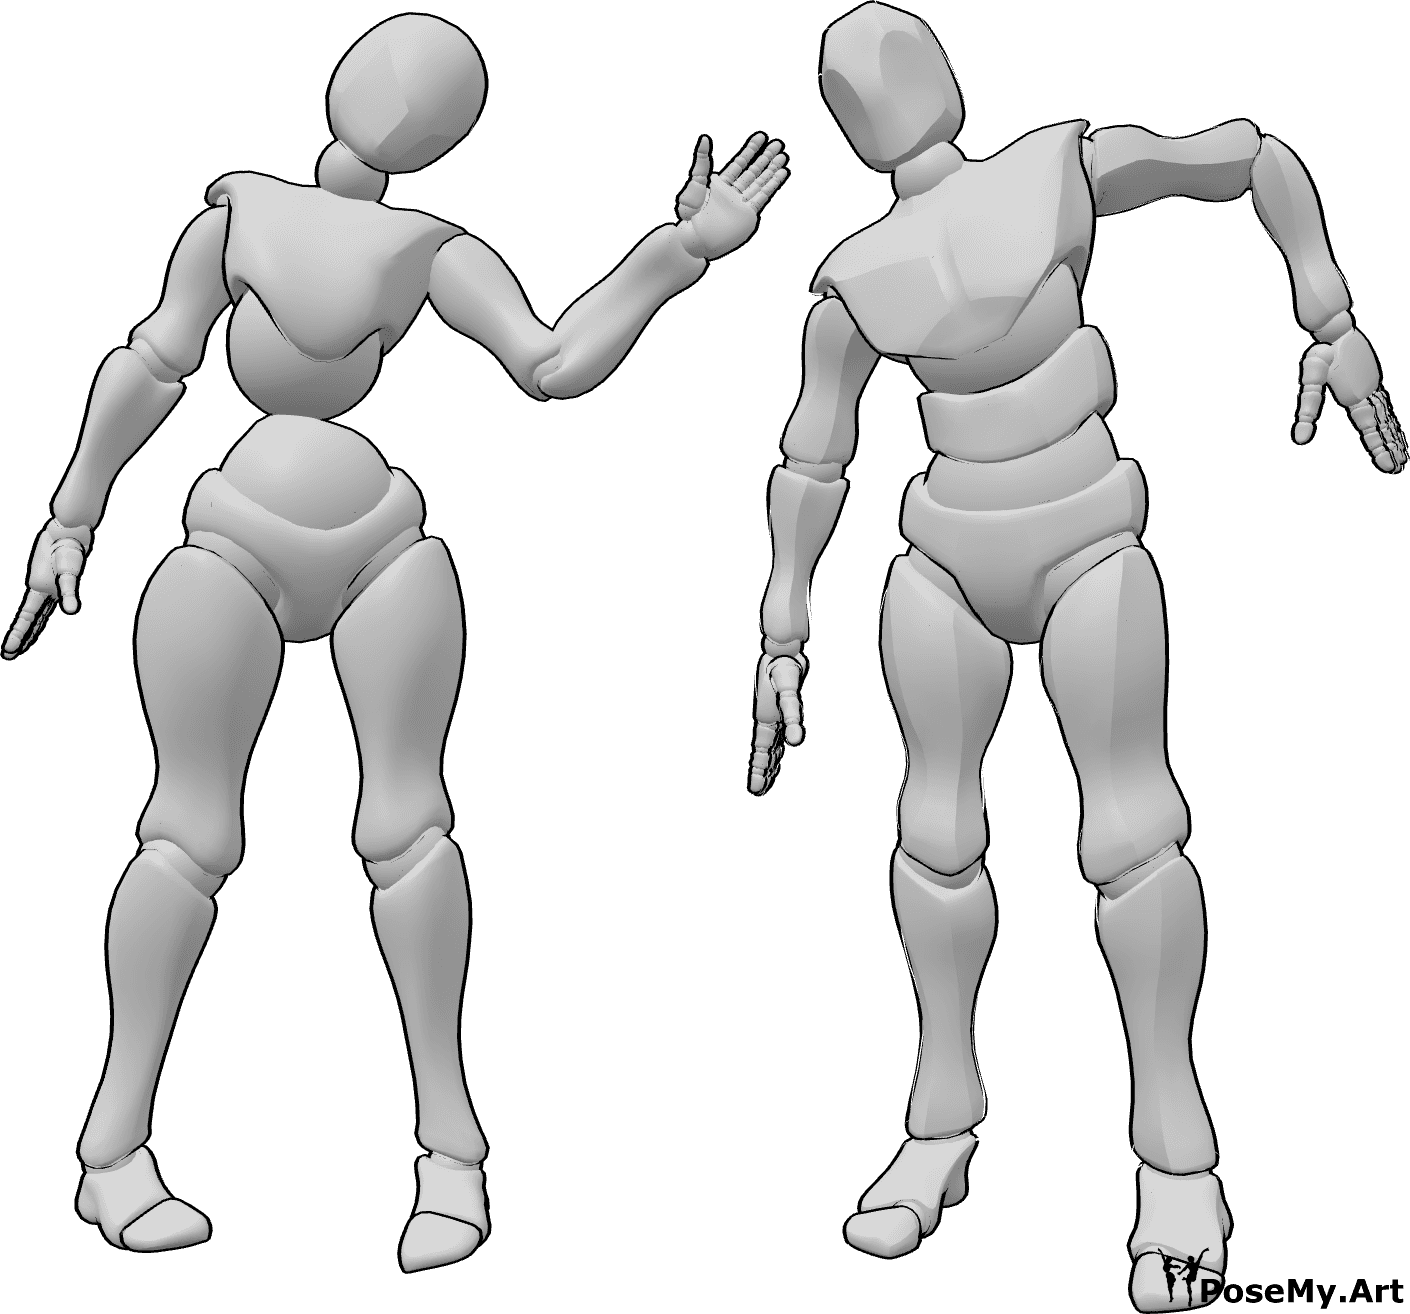 Posen-Referenz- Unheimliche weibliche männliche Pose - Gruselige weibliche und männliche Zombie-ähnliche Pose